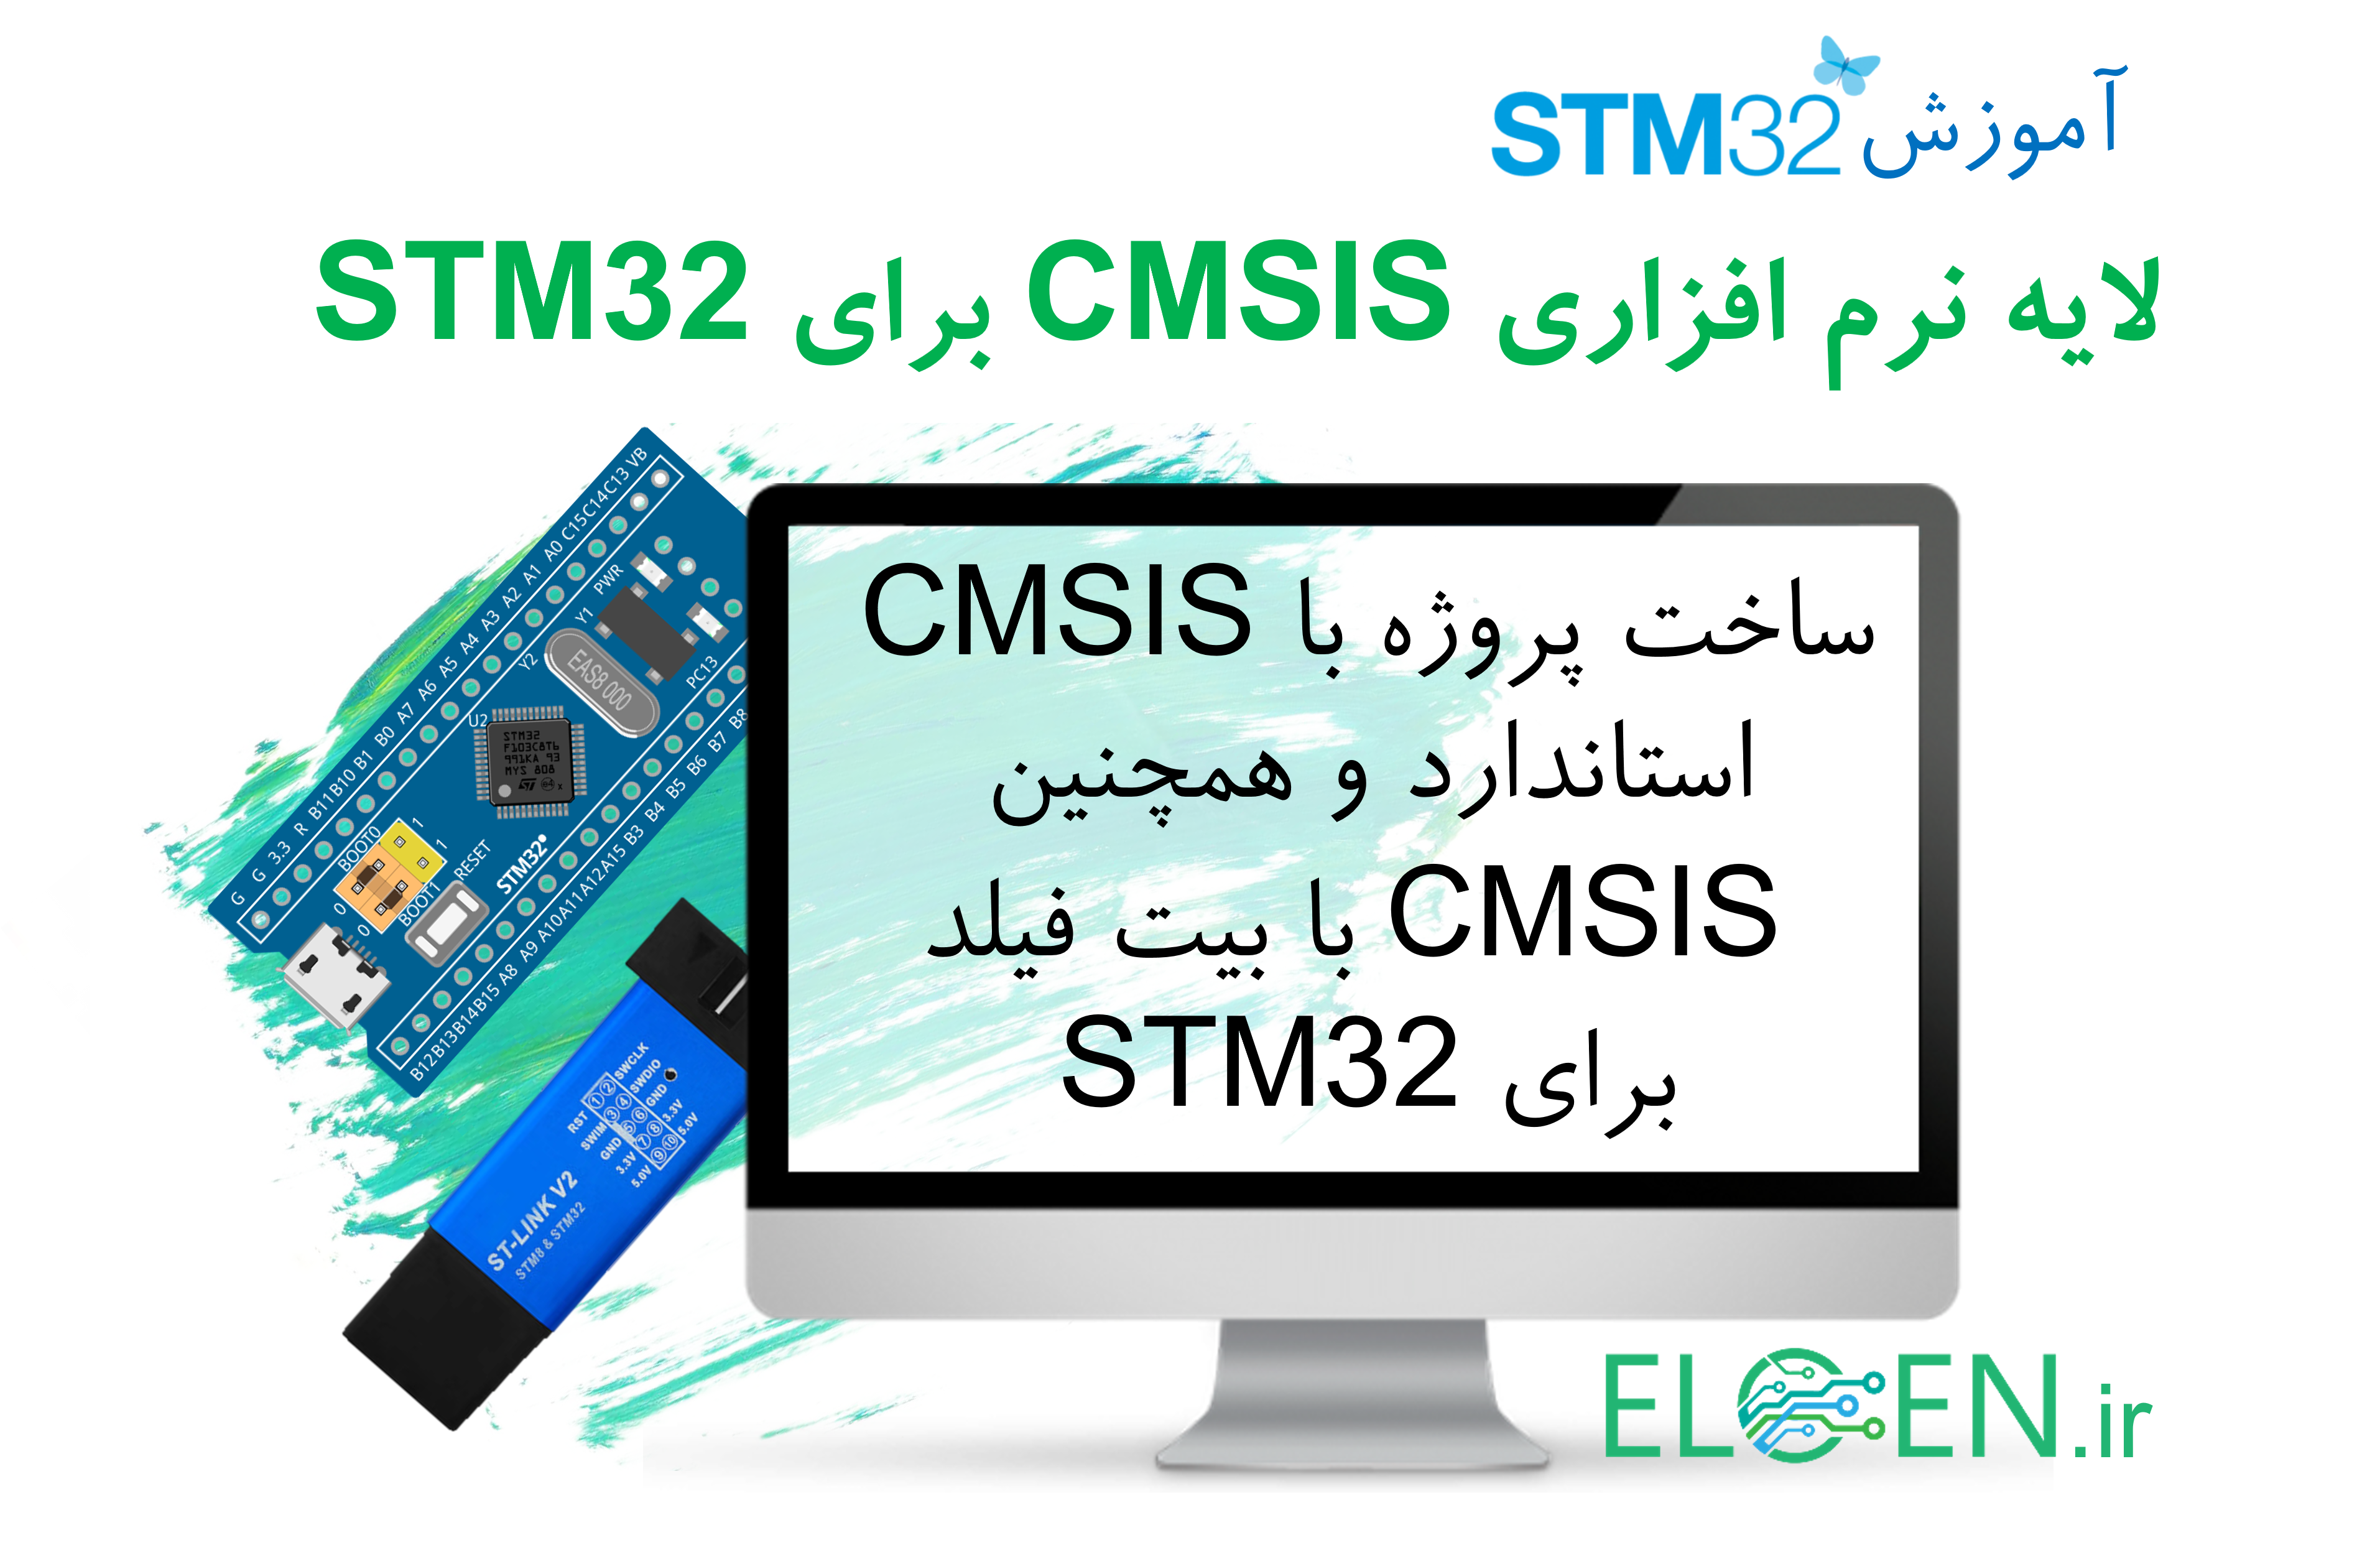 لایه ی نرم افزاری CMSIS برای STM32